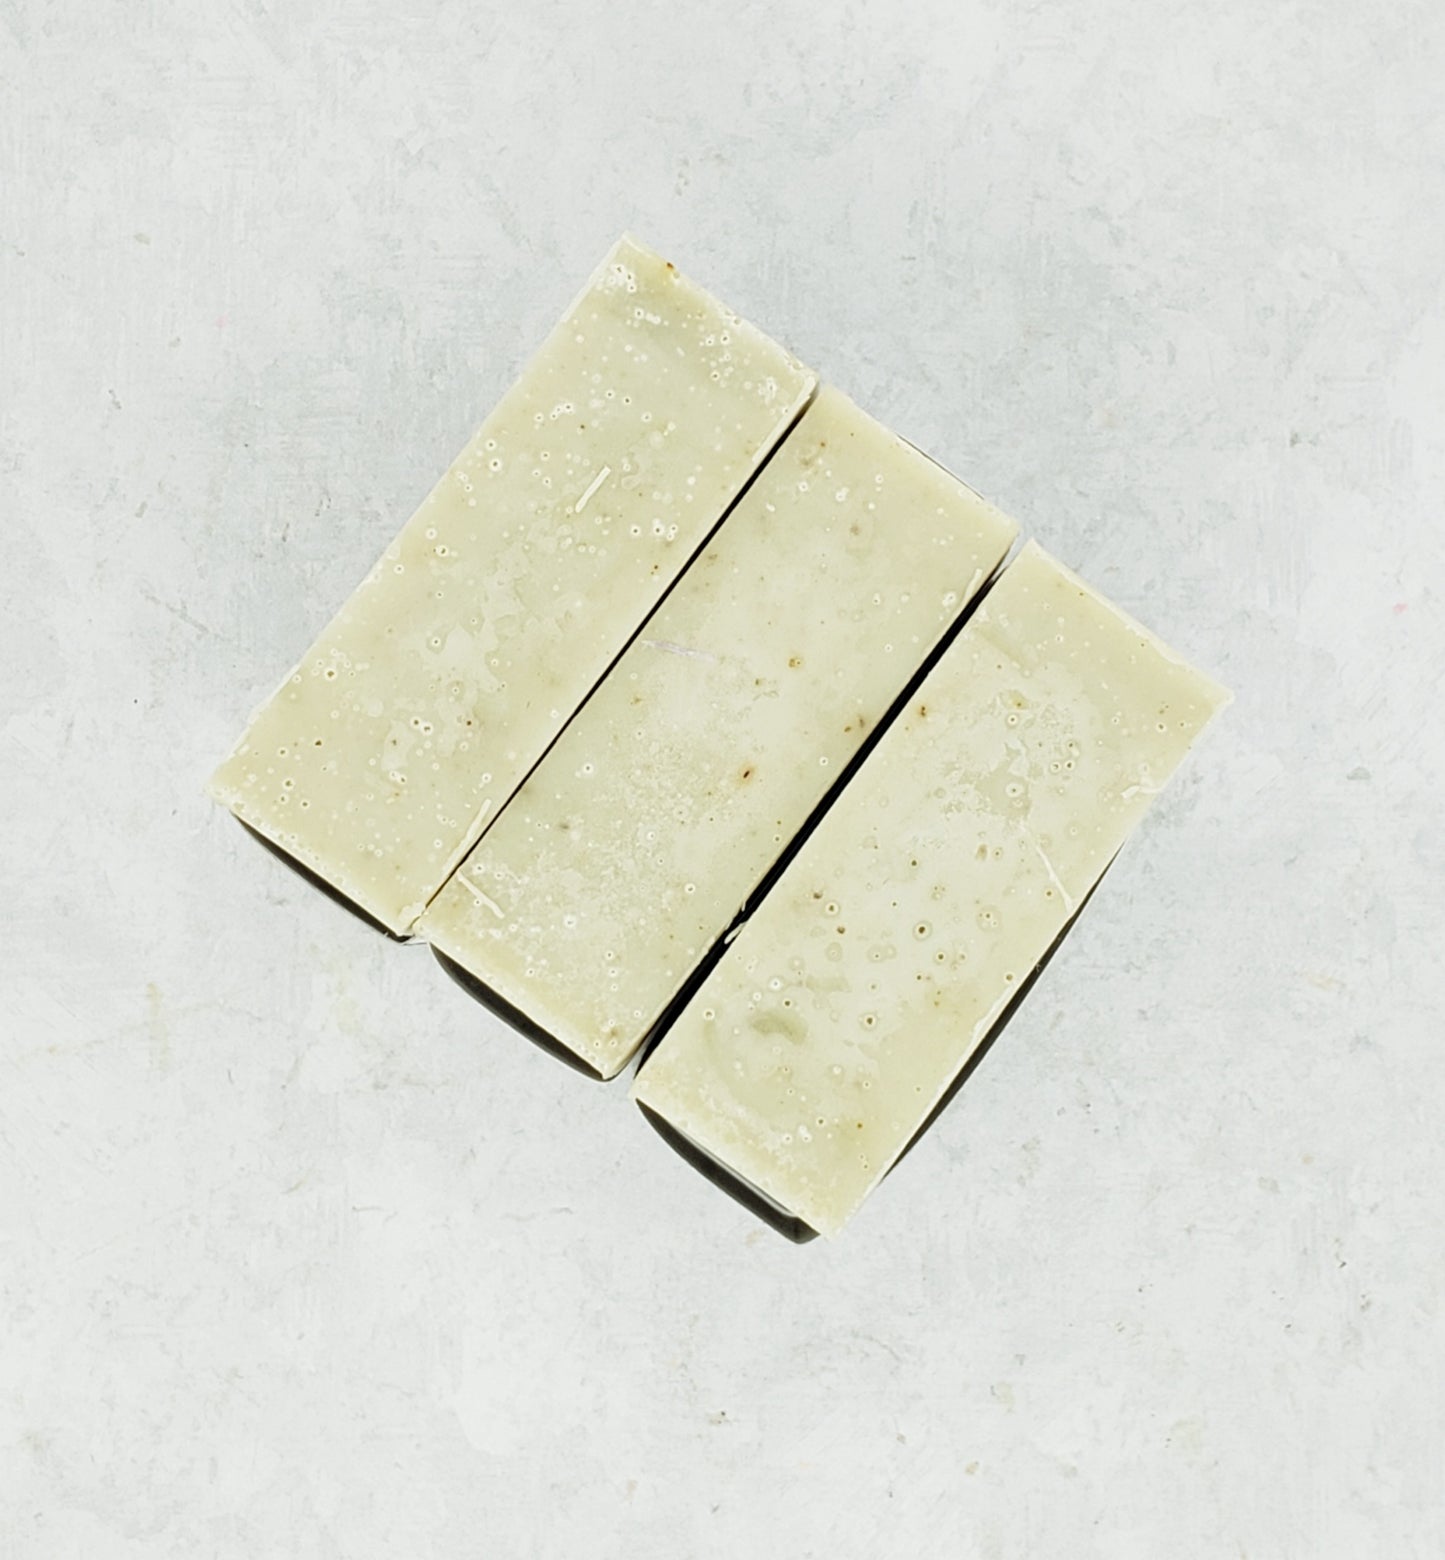 Eucalyptus & Mint- Bar Soap